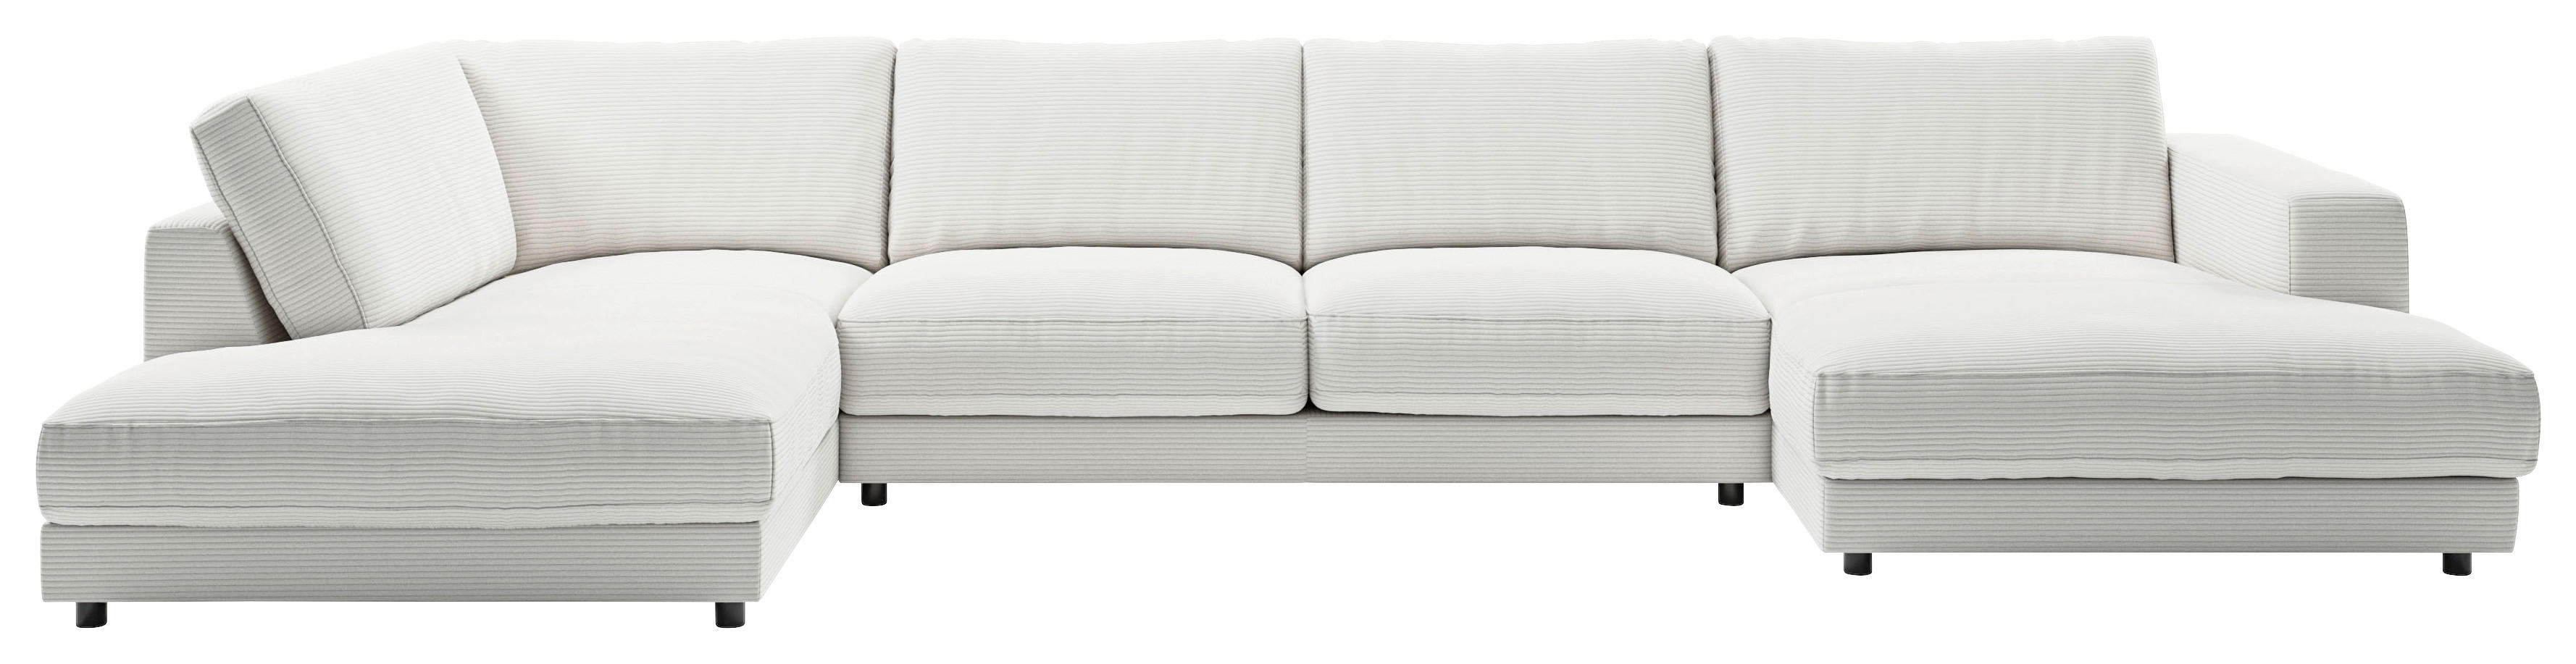 WOHNLANDSCHAFT Weiß Cord  - Schwarz/Weiß, Design, Kunststoff/Textil (224/425/190cm) - Pure Home Lifestyle